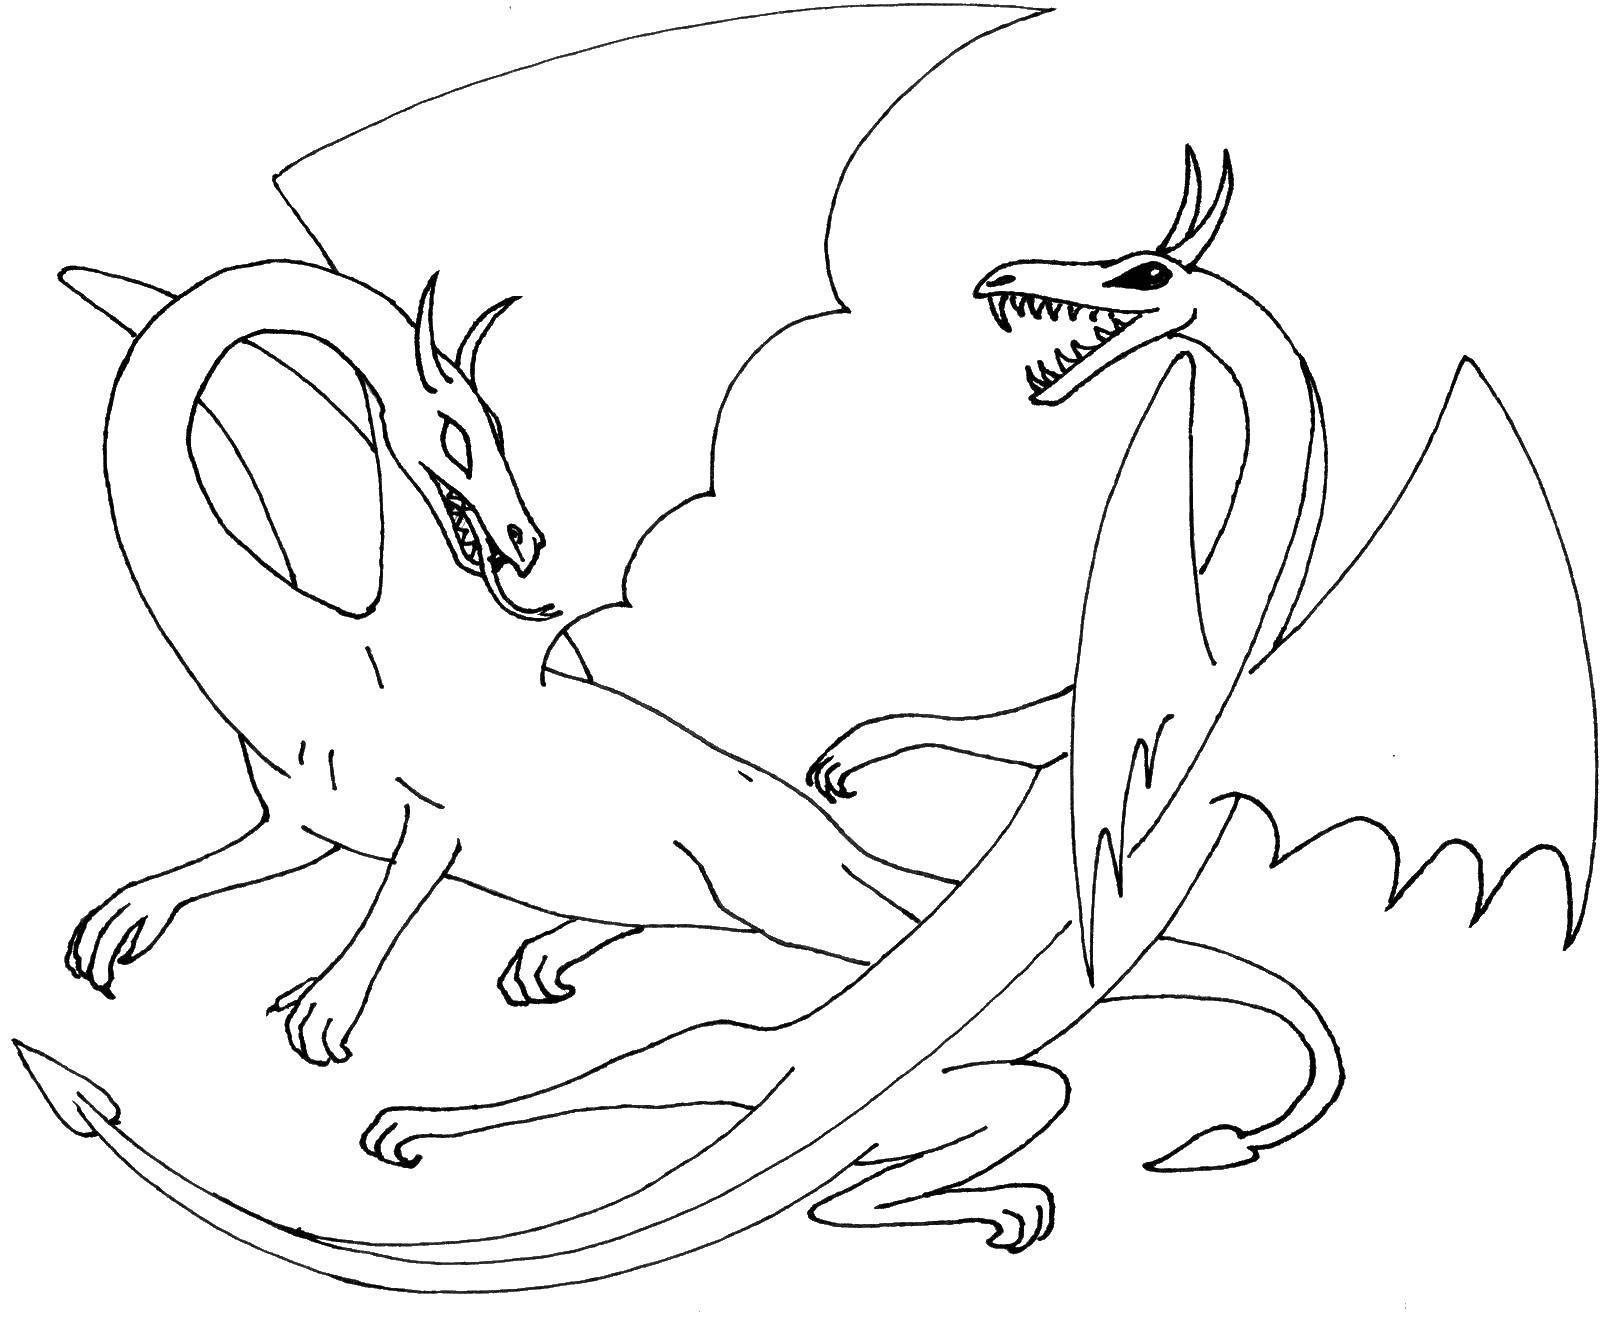 Coloring Dragons Qin and Yang. Category Dragons. Tags:  dragons.